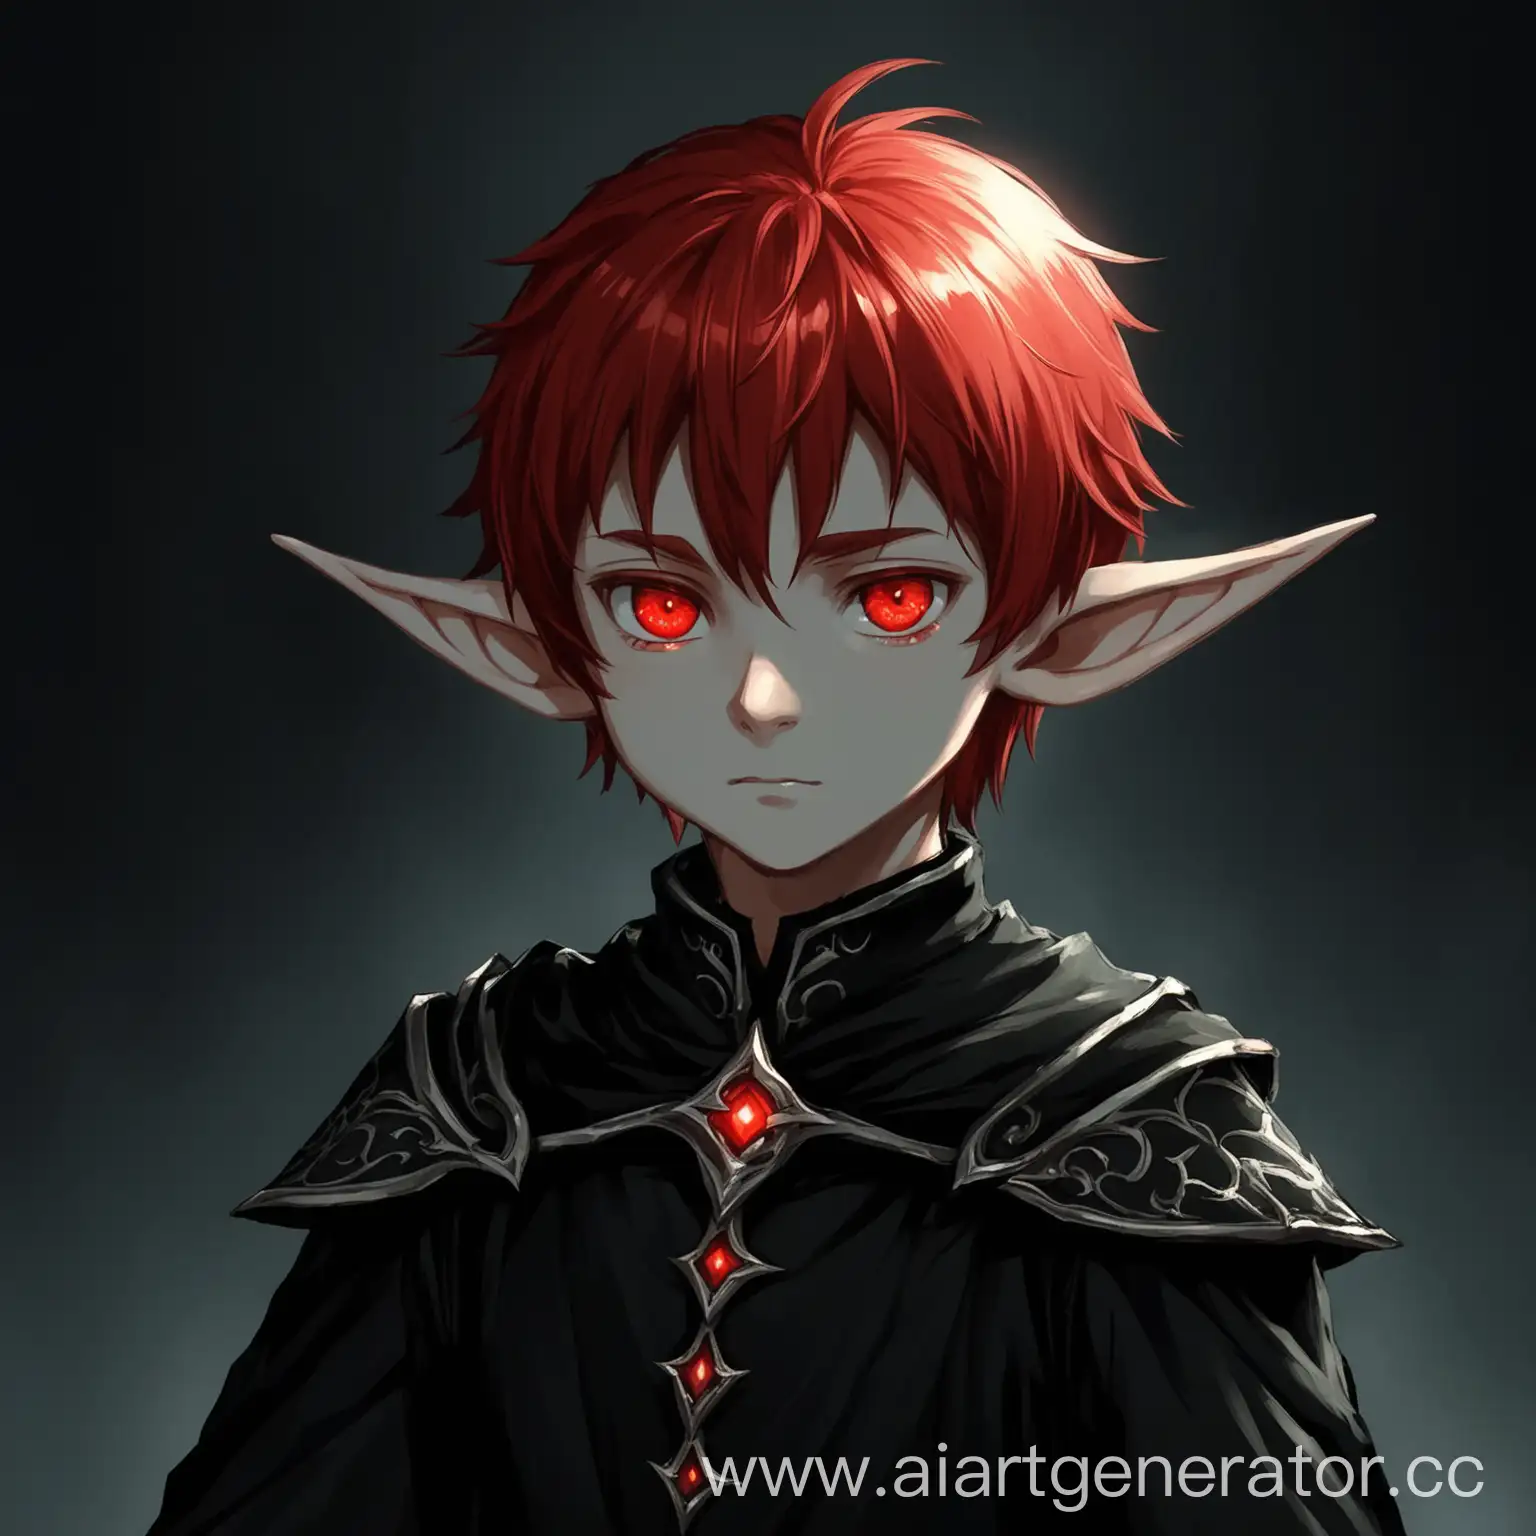 Mysterious-RedHaired-Elf-Boy-in-Dark-Attire